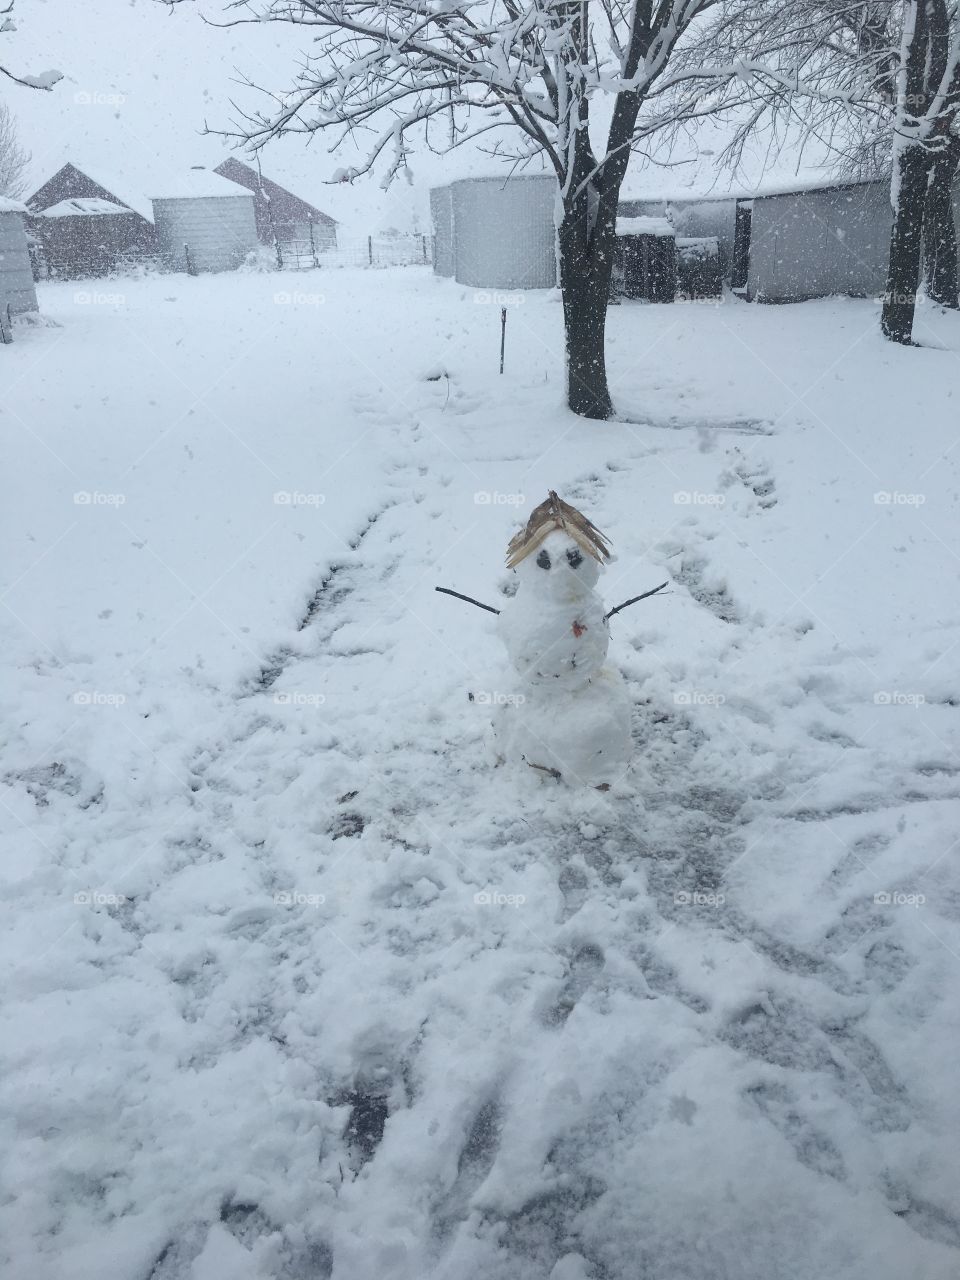 First snowman!